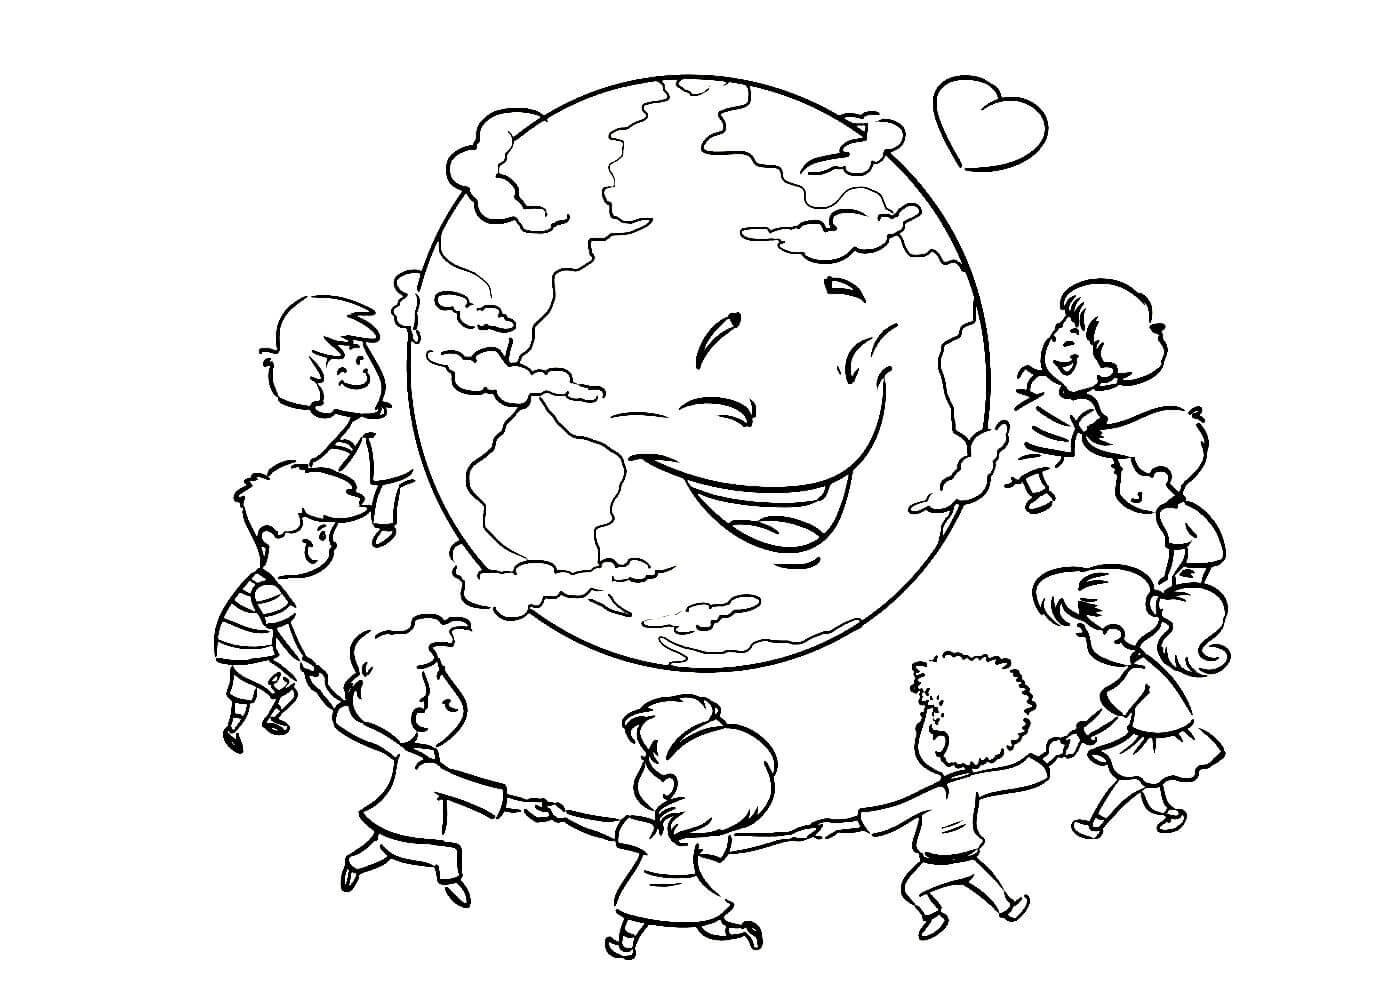 Рисунок на тему дружат дети всей планеты